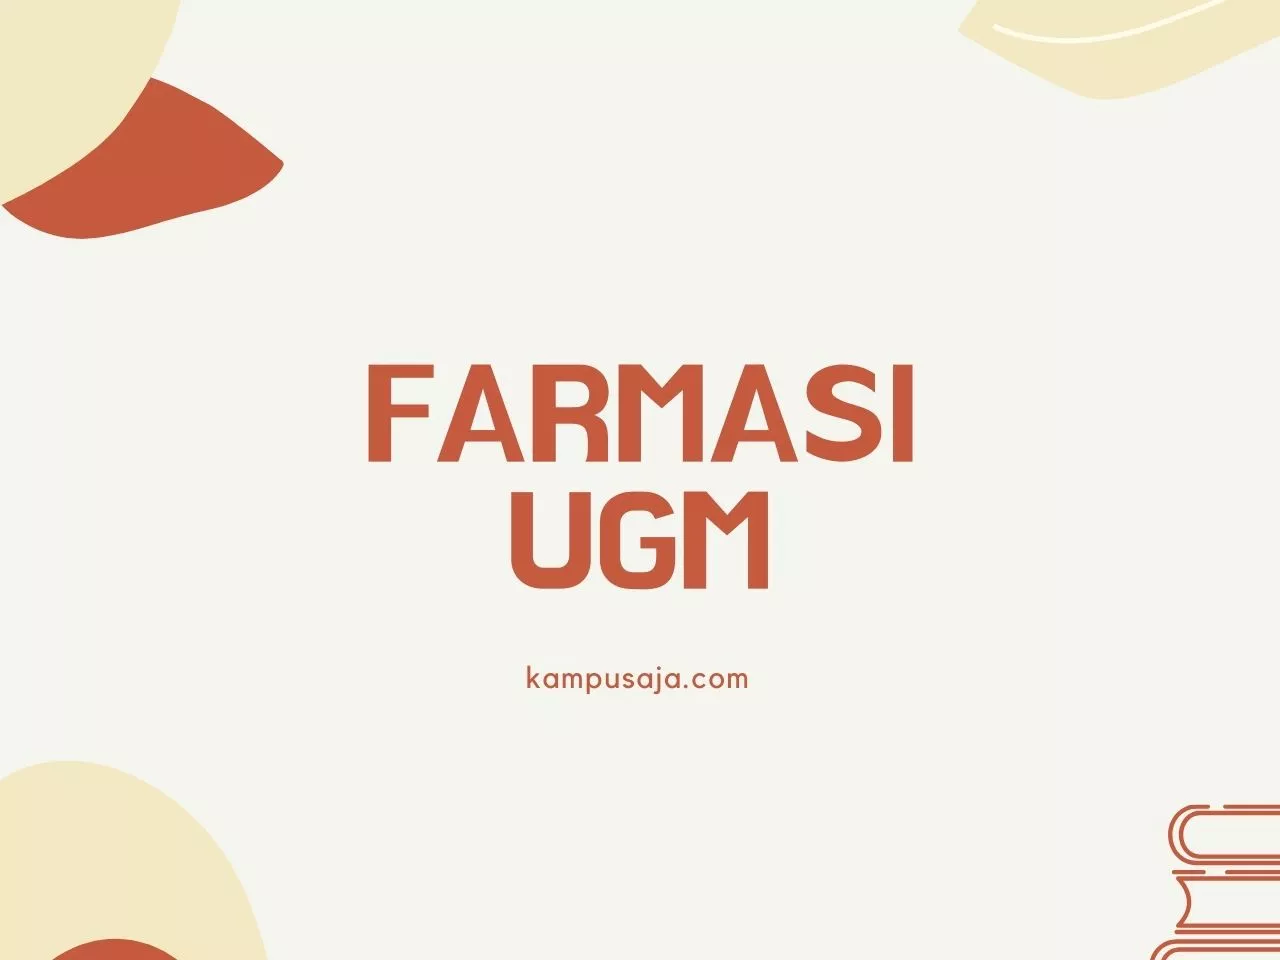 Farmasi UGM